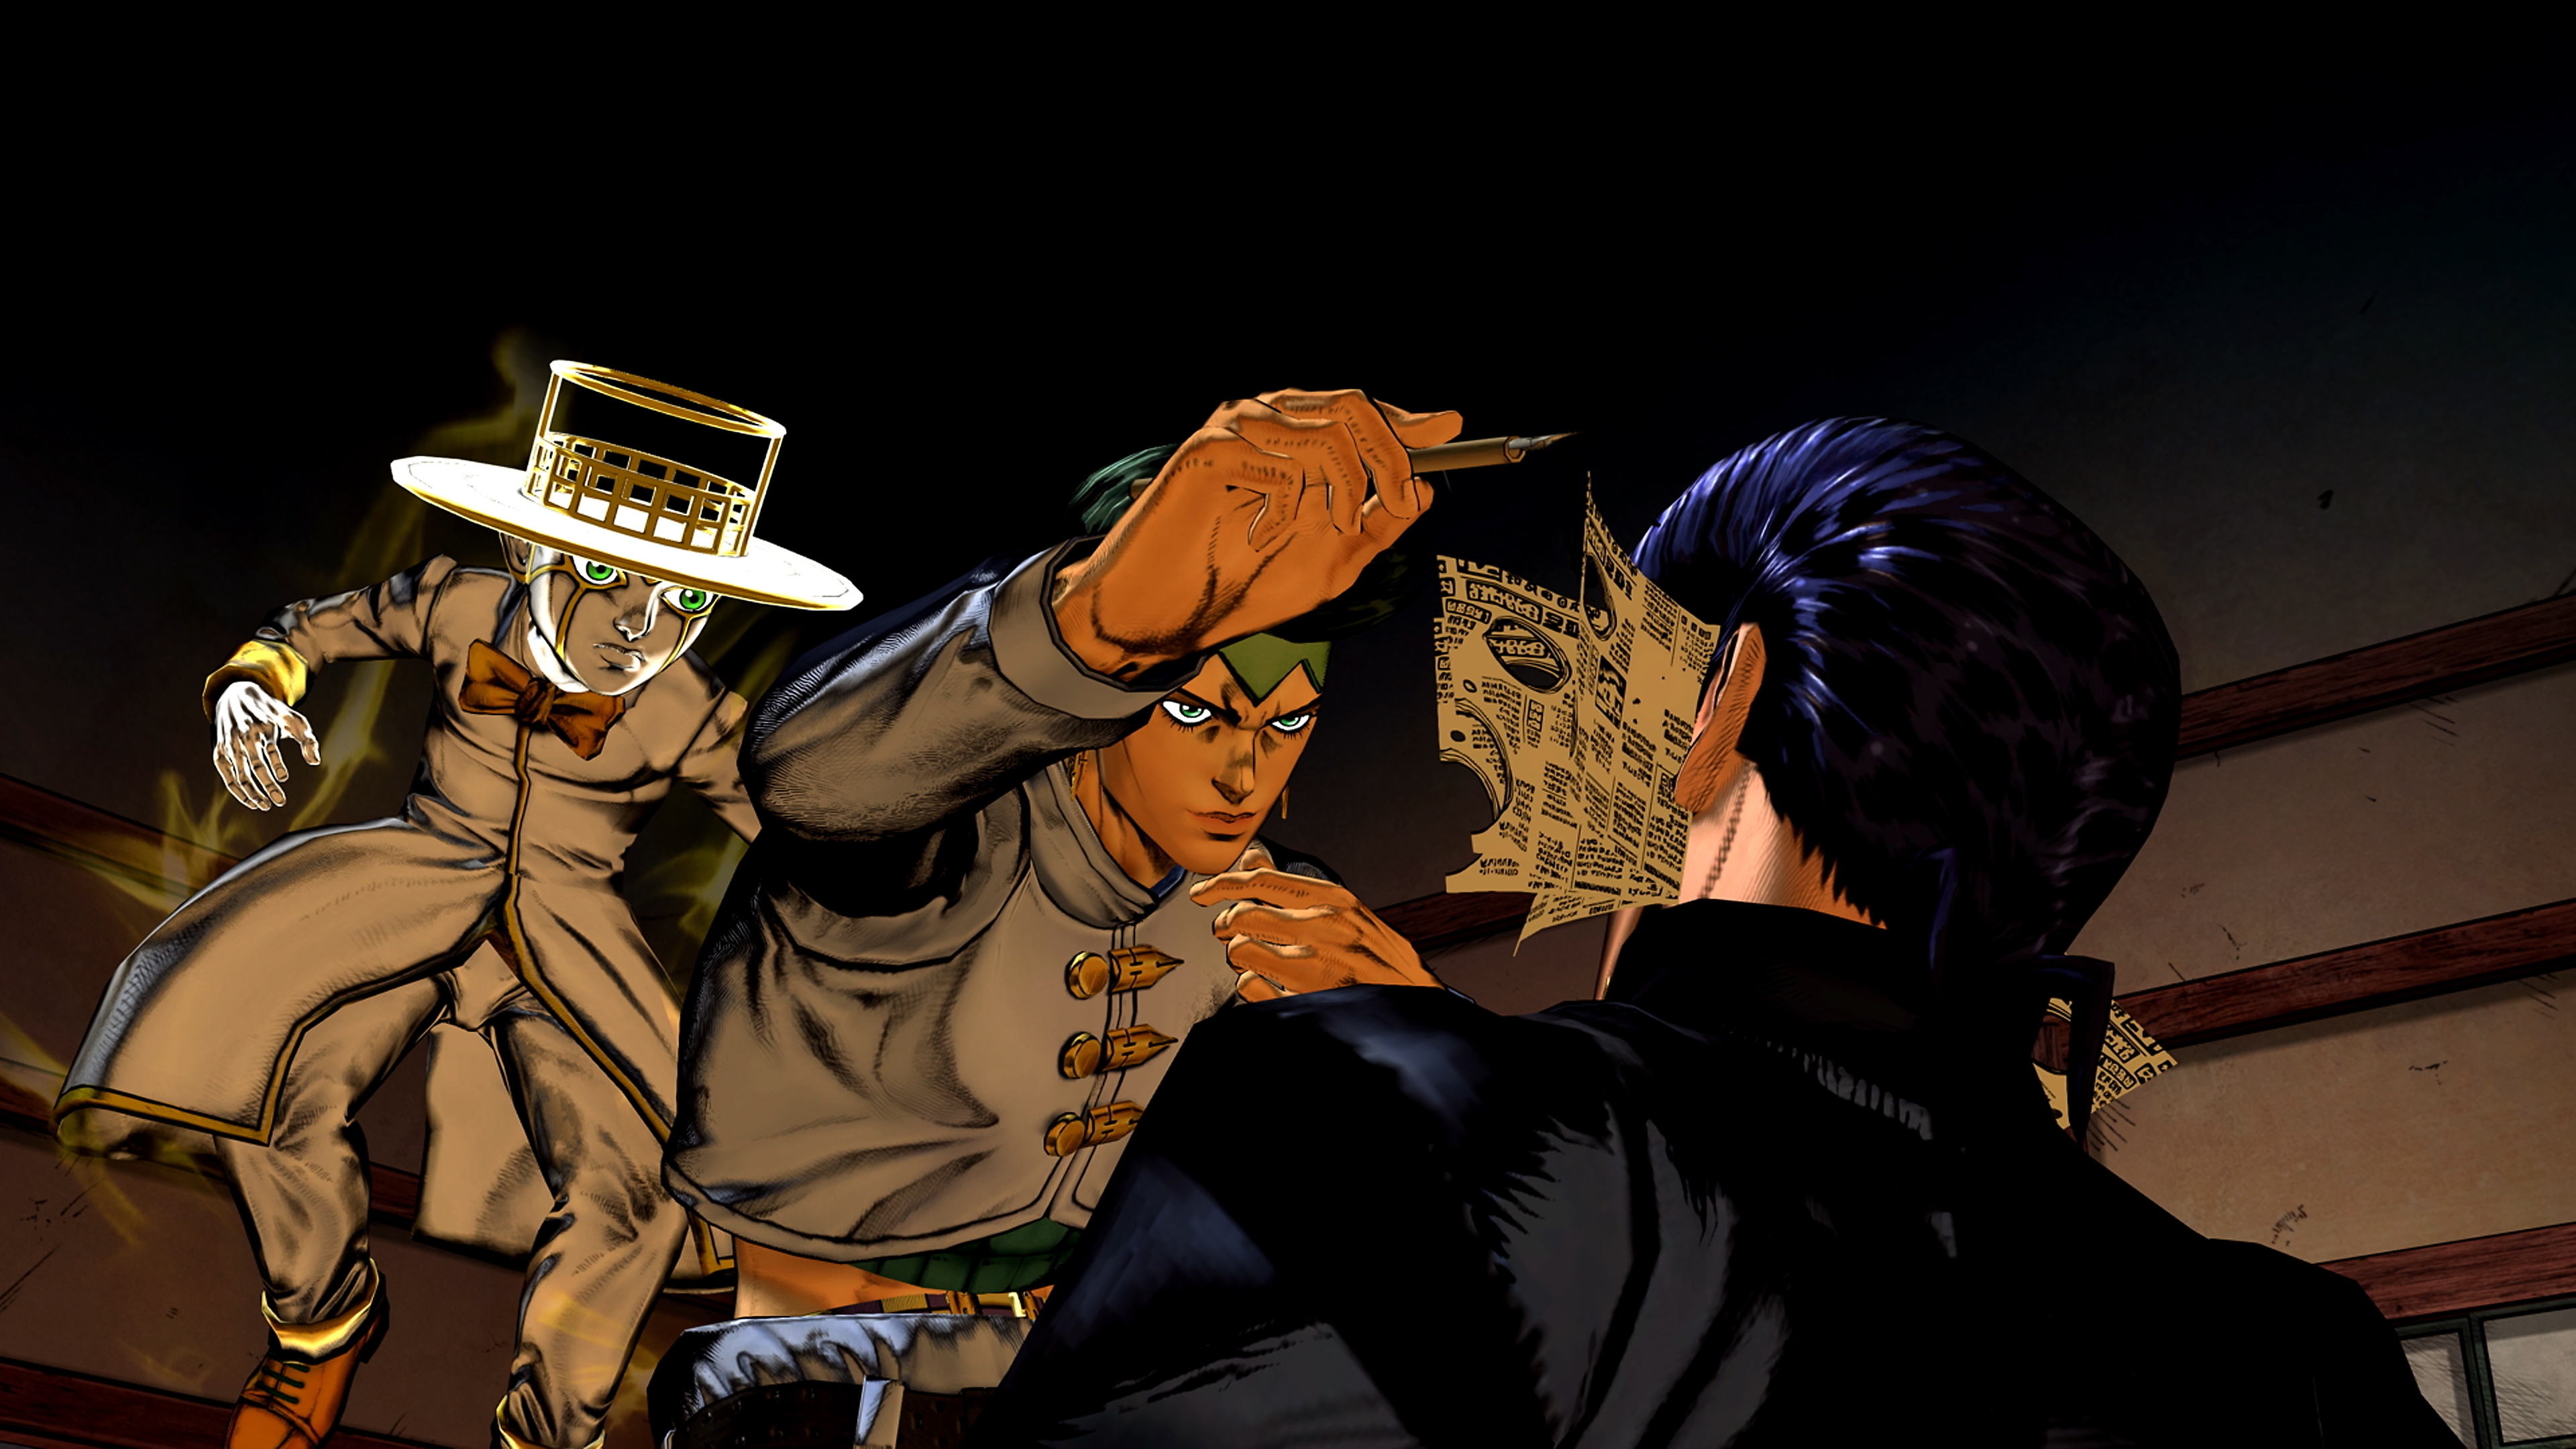 JoJo's Bizarre Adventure All Star Battle Remaster - captura de tela com três personagens em uma cena